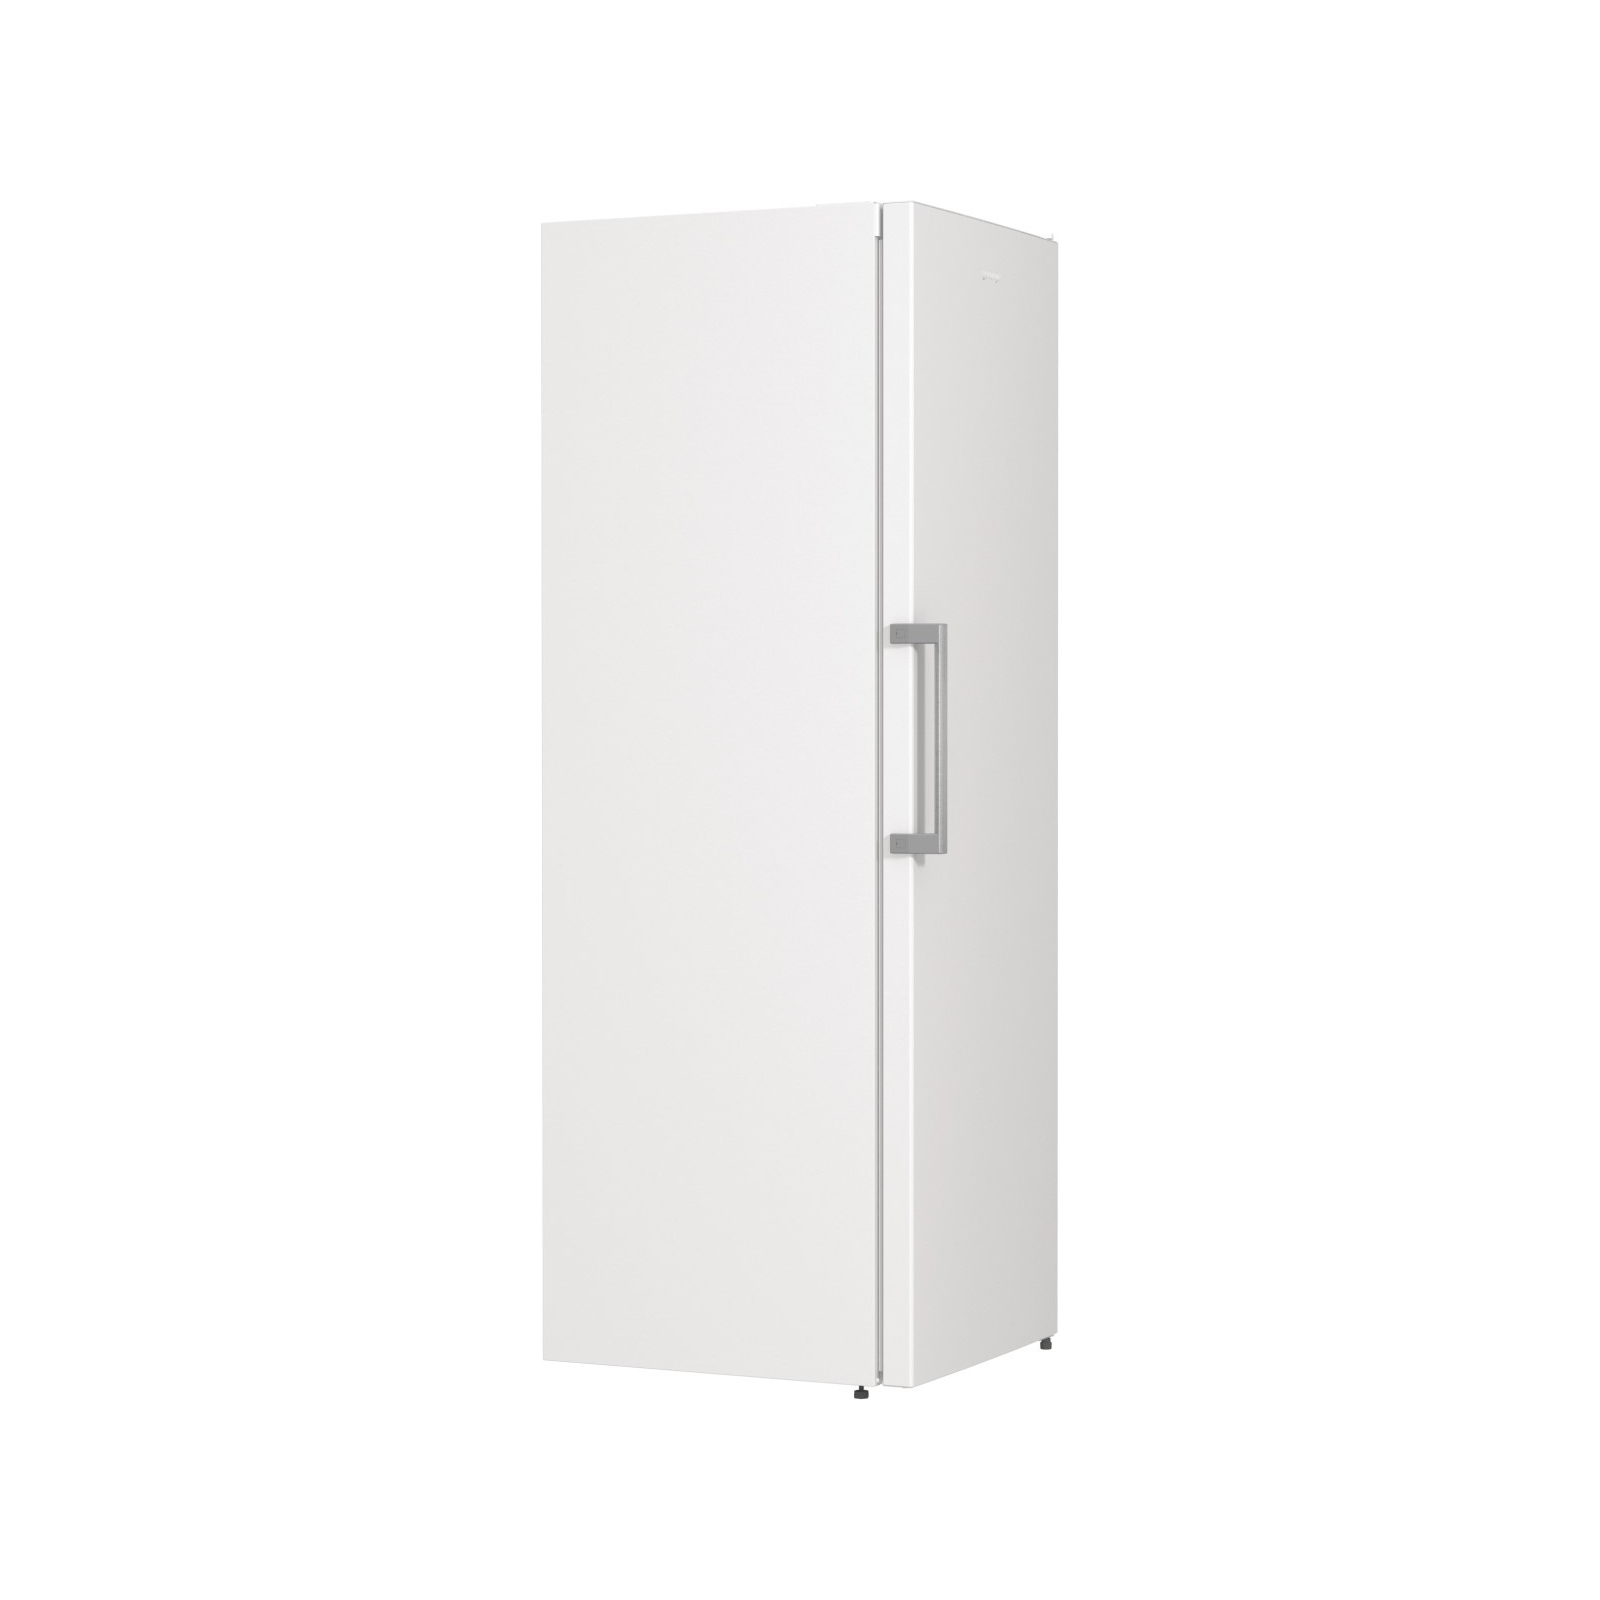 Холодильник Gorenje R619FEW5 изображение 3